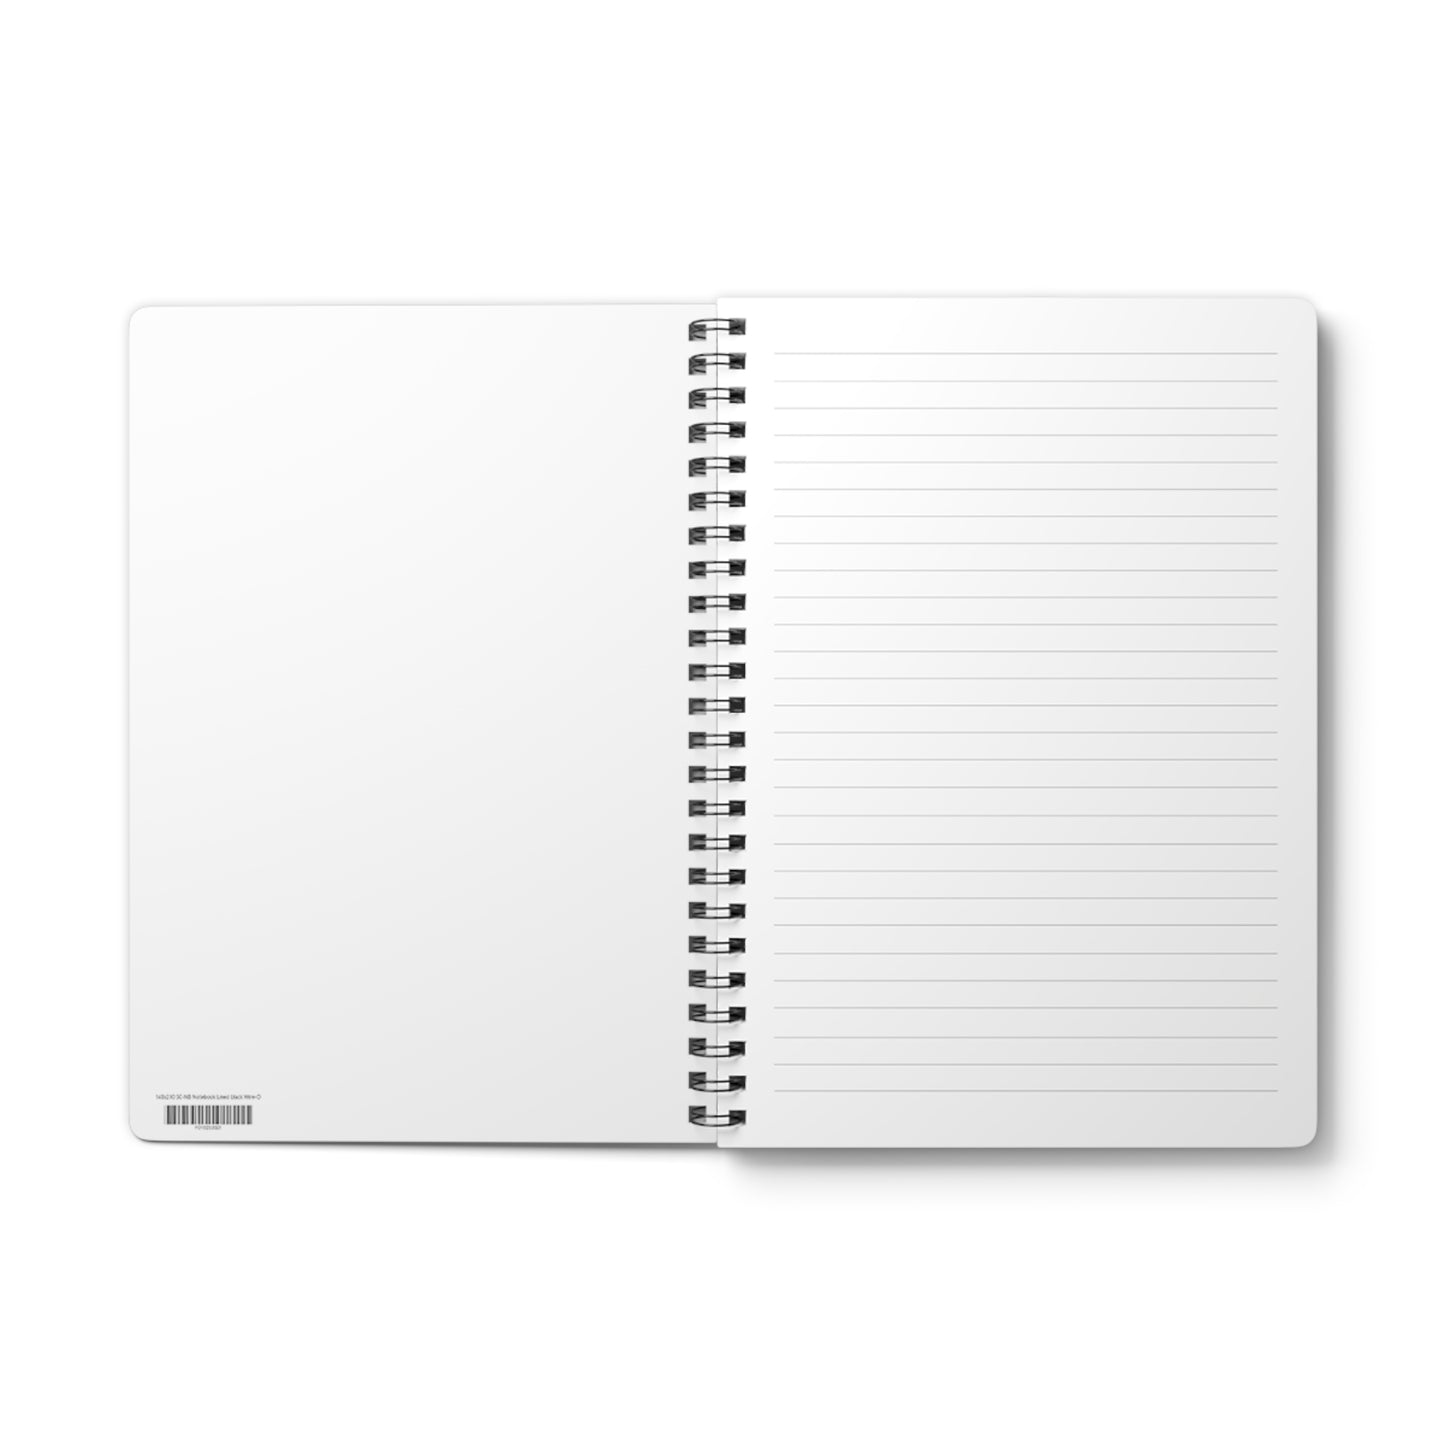 The Focus Stone - A5 Wirebound Notebook